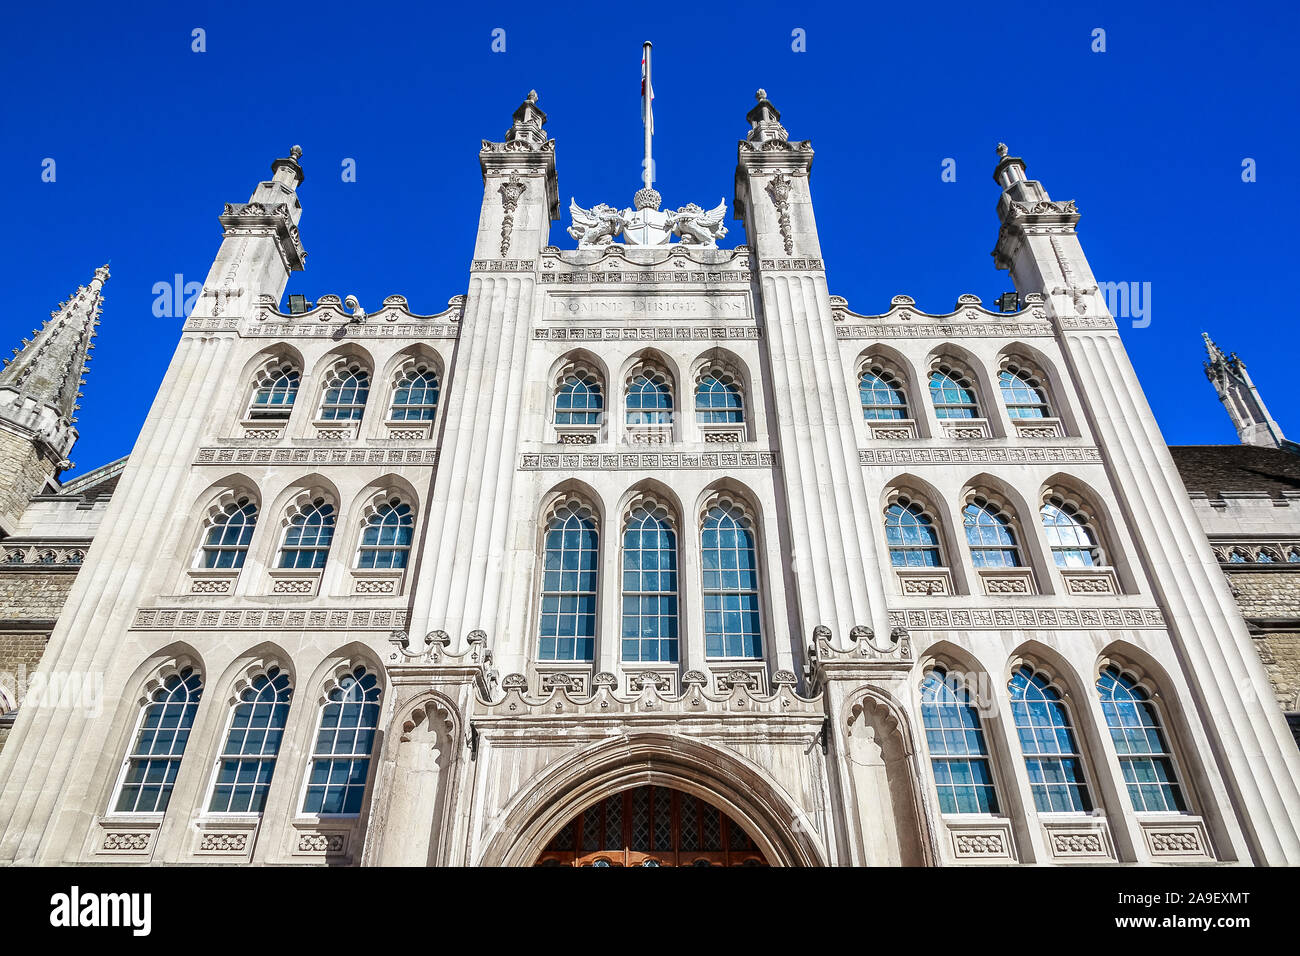 La facciata della Guildhall nella City di Londra, Inghilterra contro un cielo privo di nuvole Foto Stock